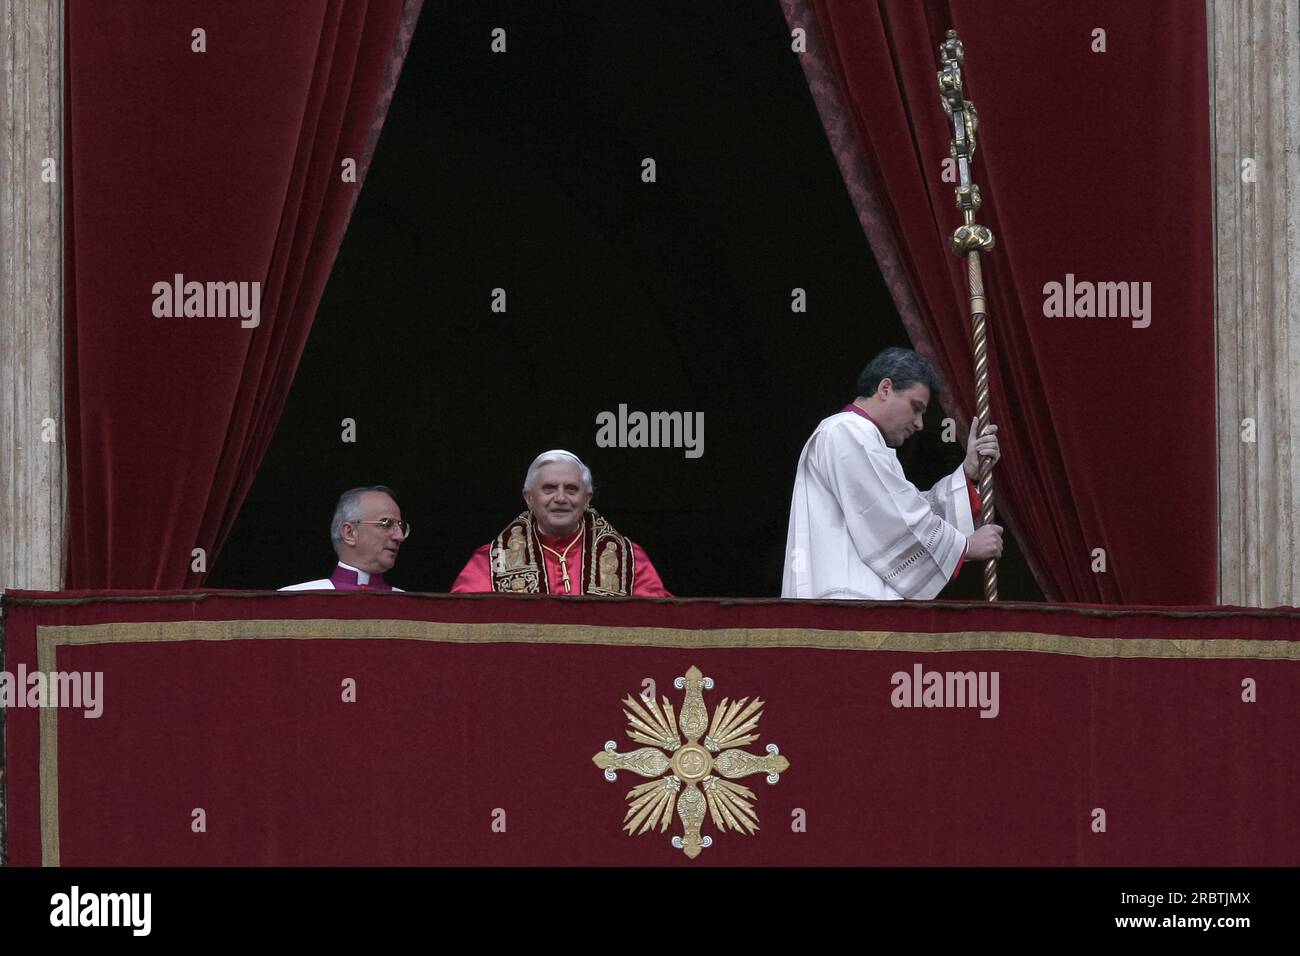 Vaticano, 19 aprile 2005. Piazza San Pietro. Il cardinale Joseph Ratzinger, eletto Papa, sceglie il nome di Benedetto XVI Foto Stock